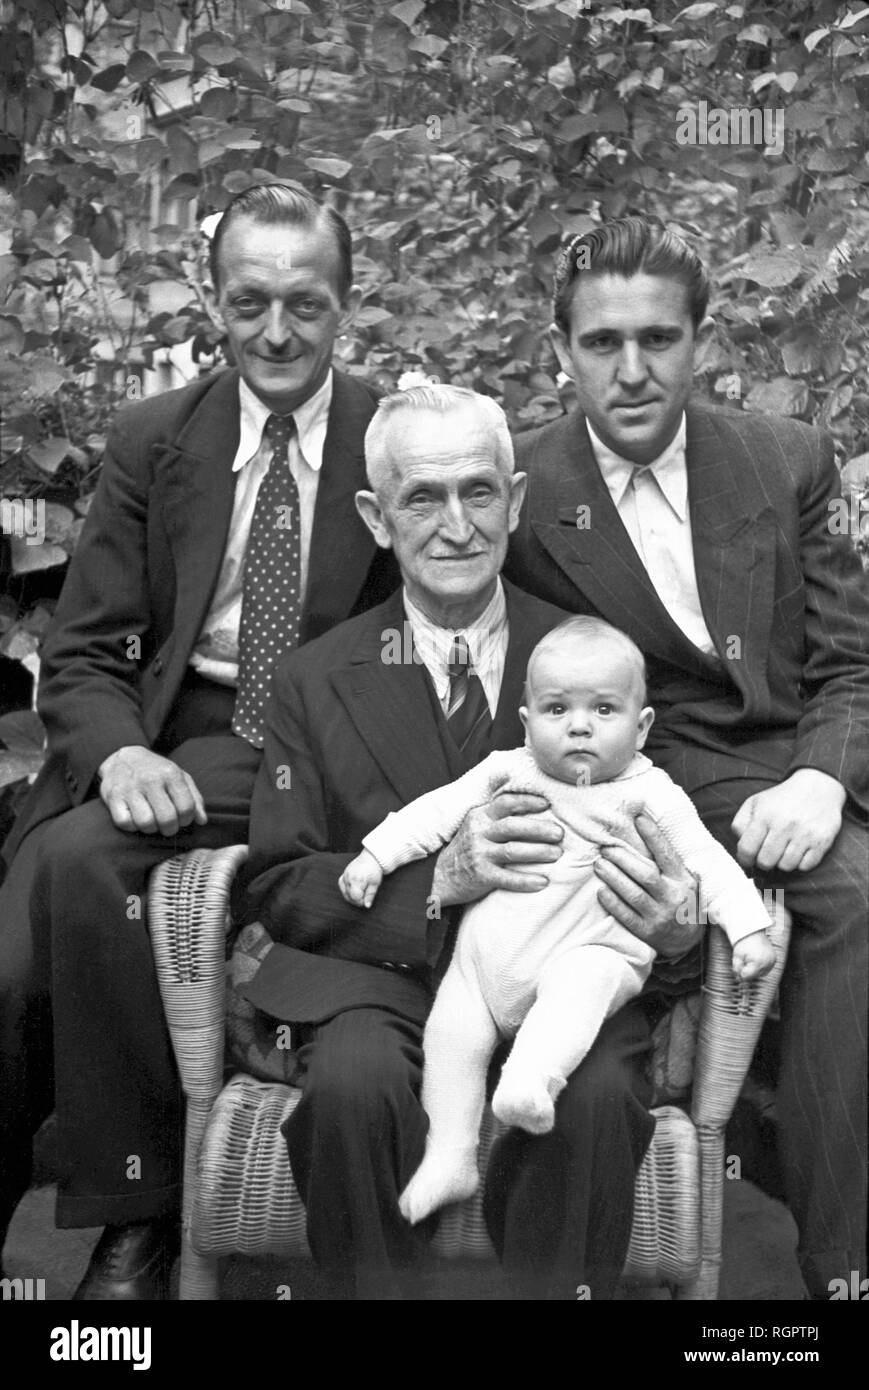 Quattro uomini, quattro generazioni, 1949, Lipsia, Sassonia, Repubblica democratica tedesca, la Germania Foto Stock